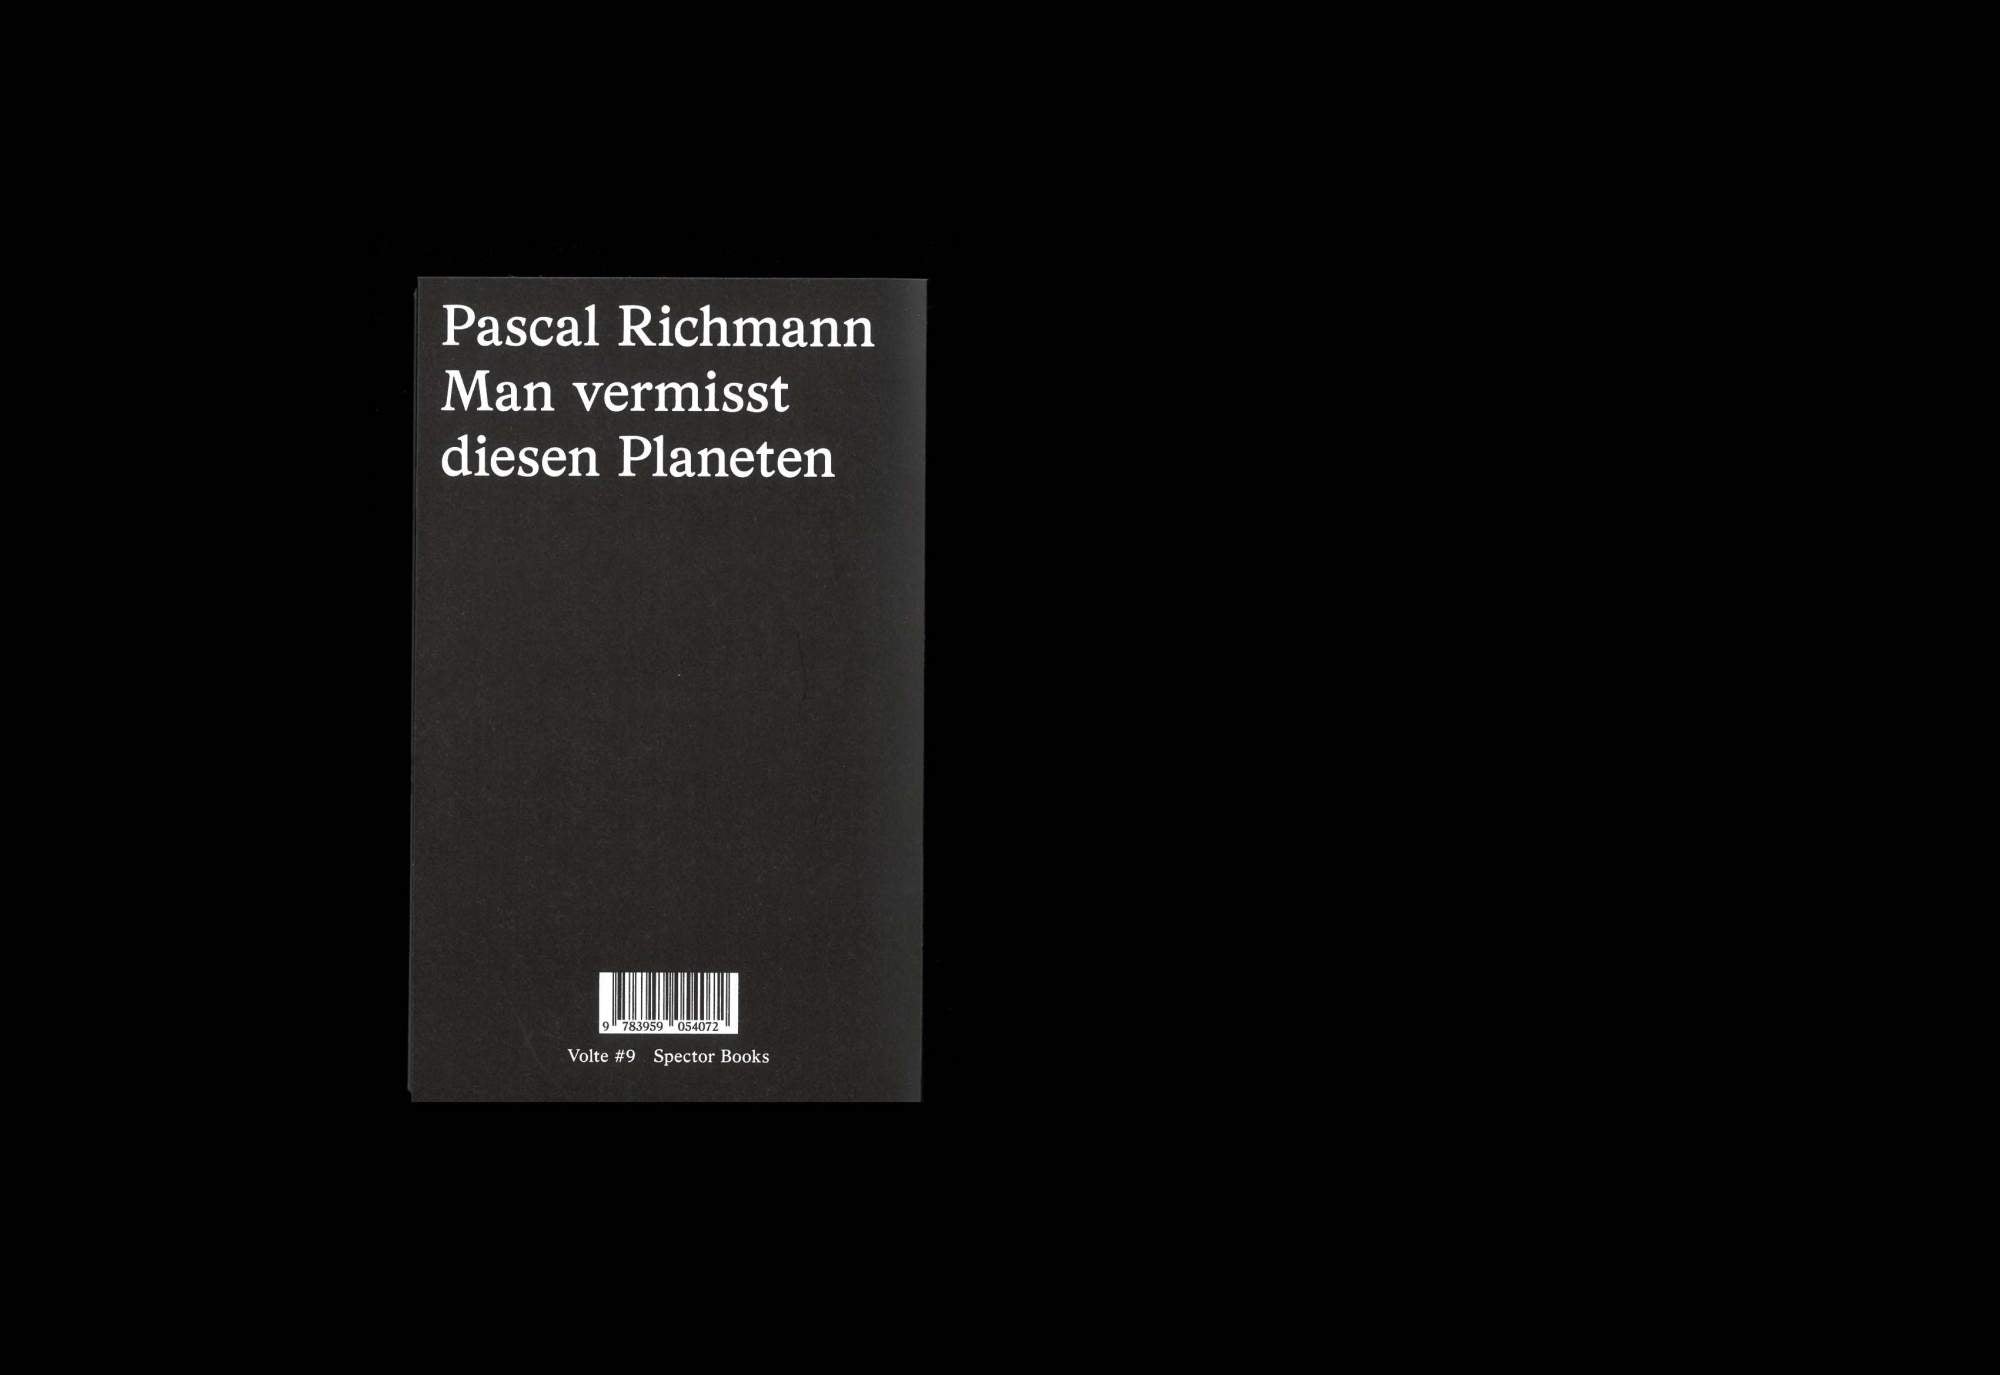 Man vermisst diesen Planeten by Pascal Richmann